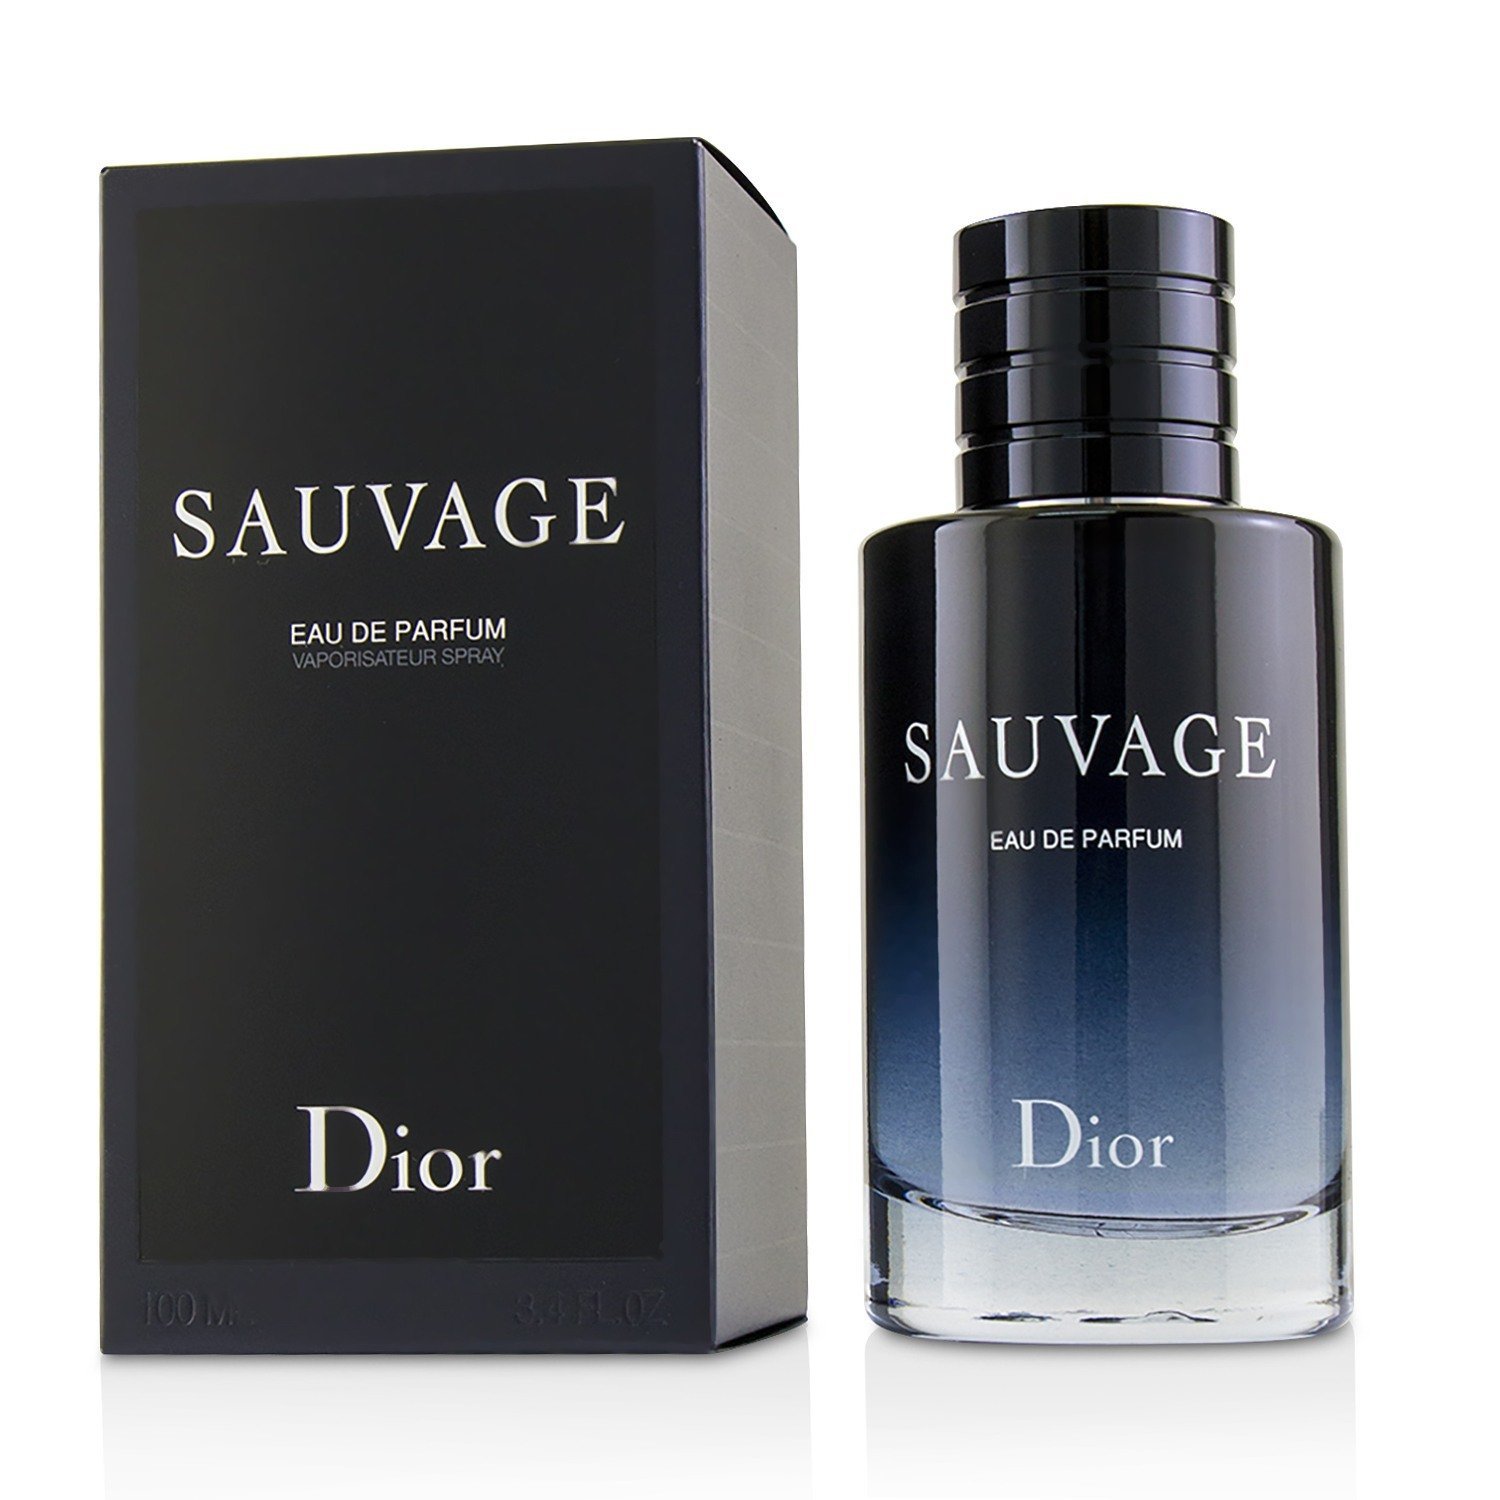 Image of Sauvage Eau de Parfum